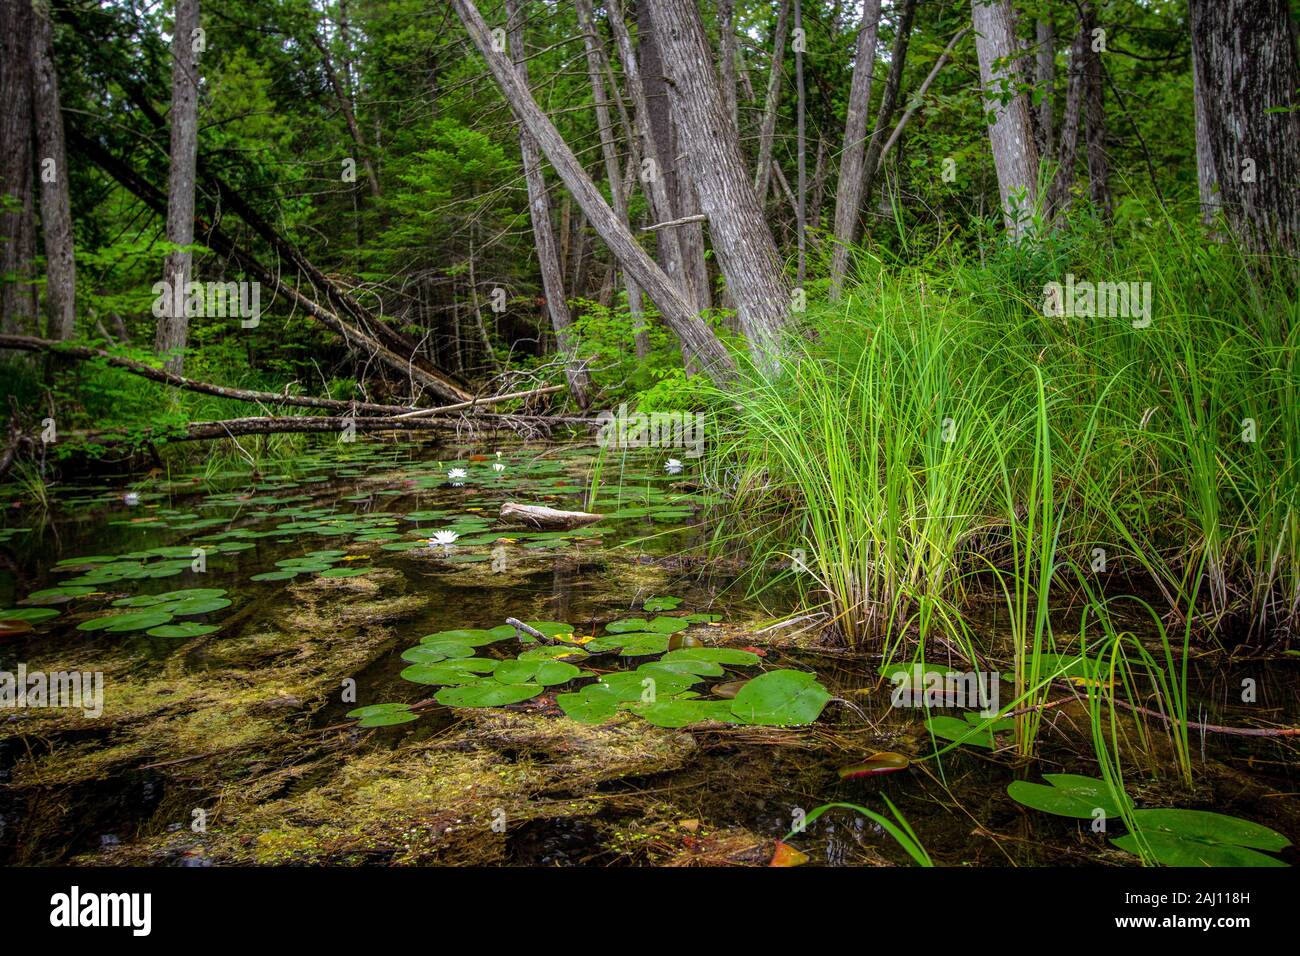 Wald Feuchtgebiete Landschaft. Grünen Waldes Feuchtgebiet mit Lily Pads und White Lotus Blumen in einem nördlichen Michigan Wald. Hartwick Pines State Park. Stockfoto